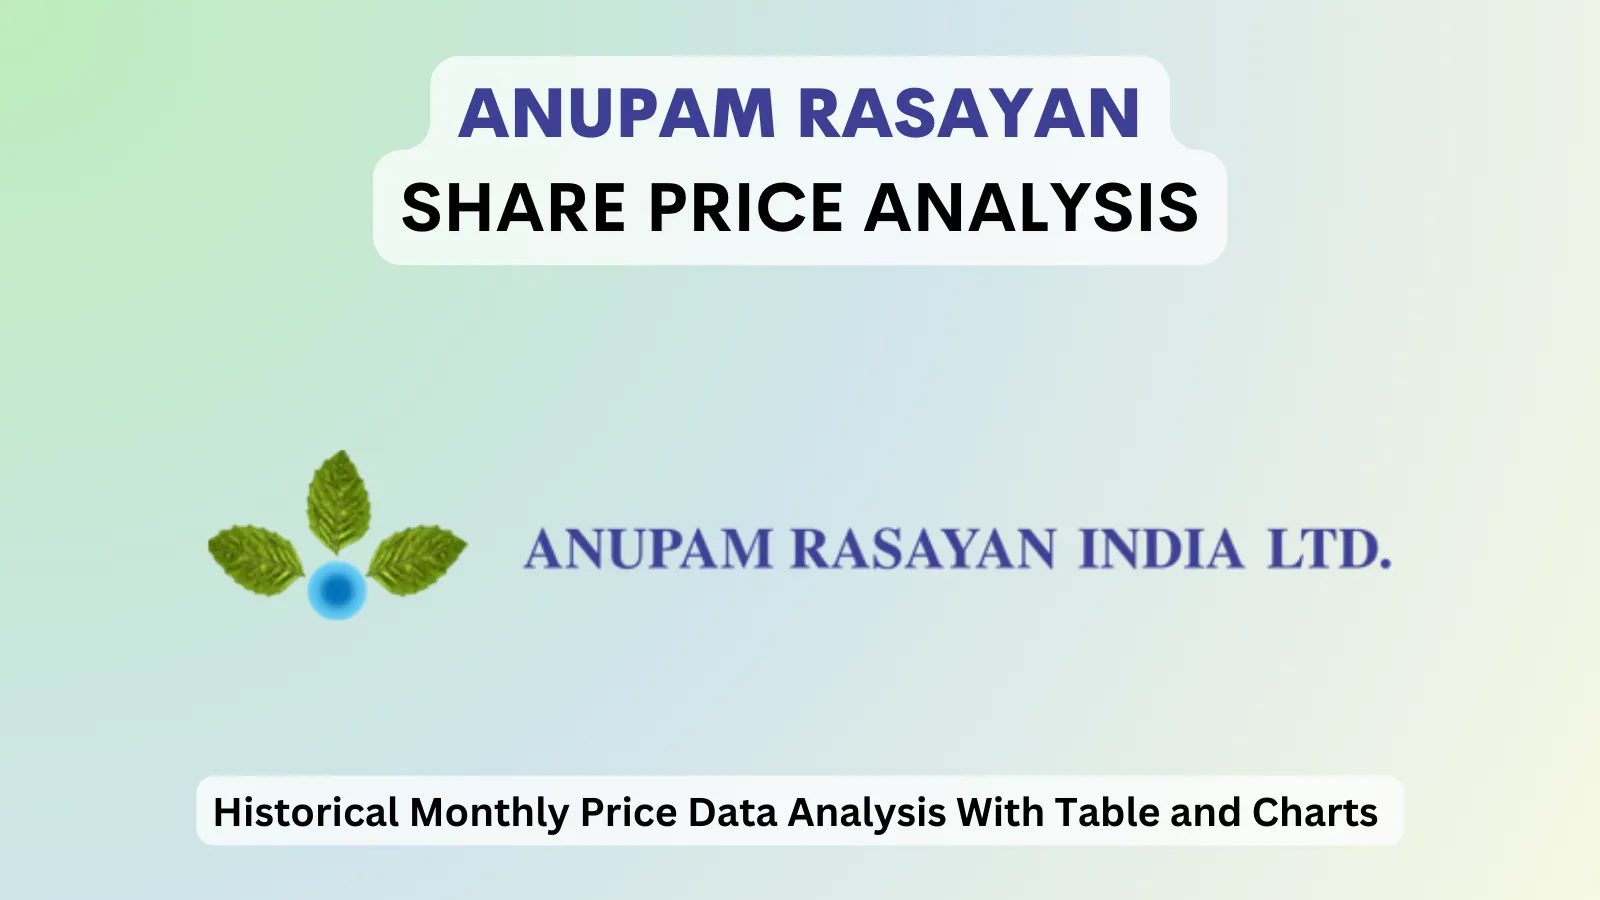 Anupam Rasayan share price analysis